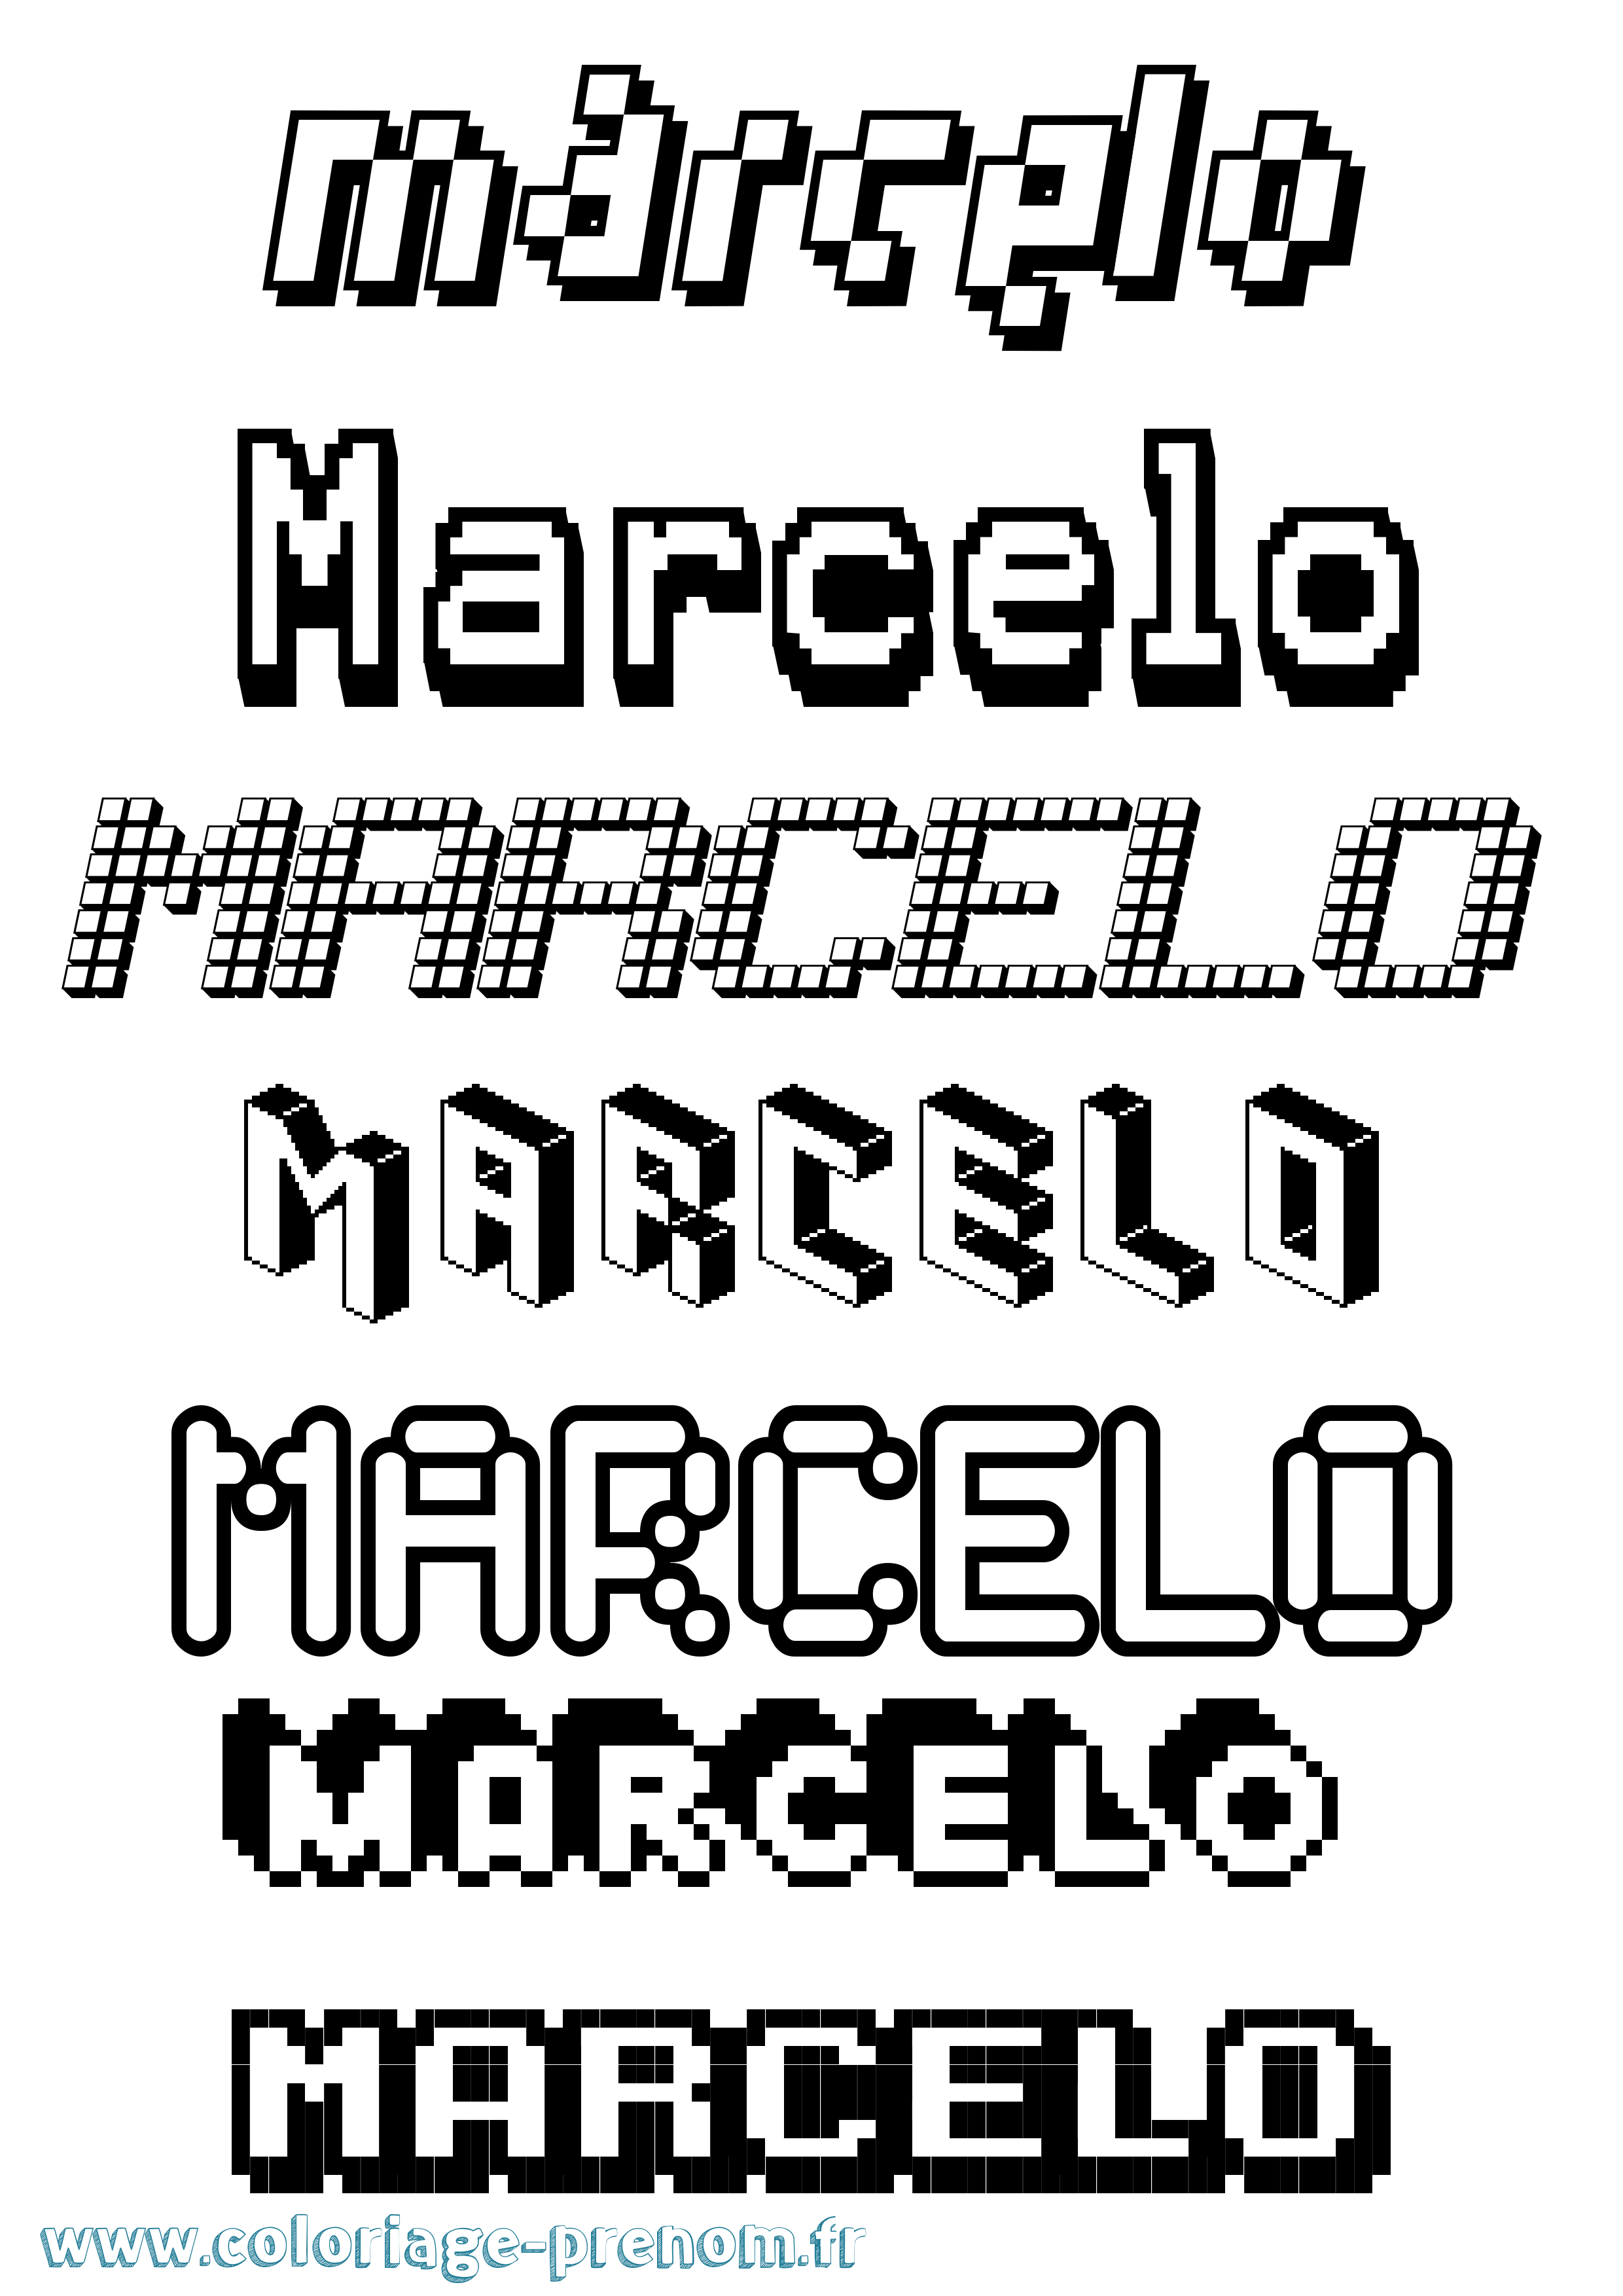 Coloriage prénom Marcelo Pixel